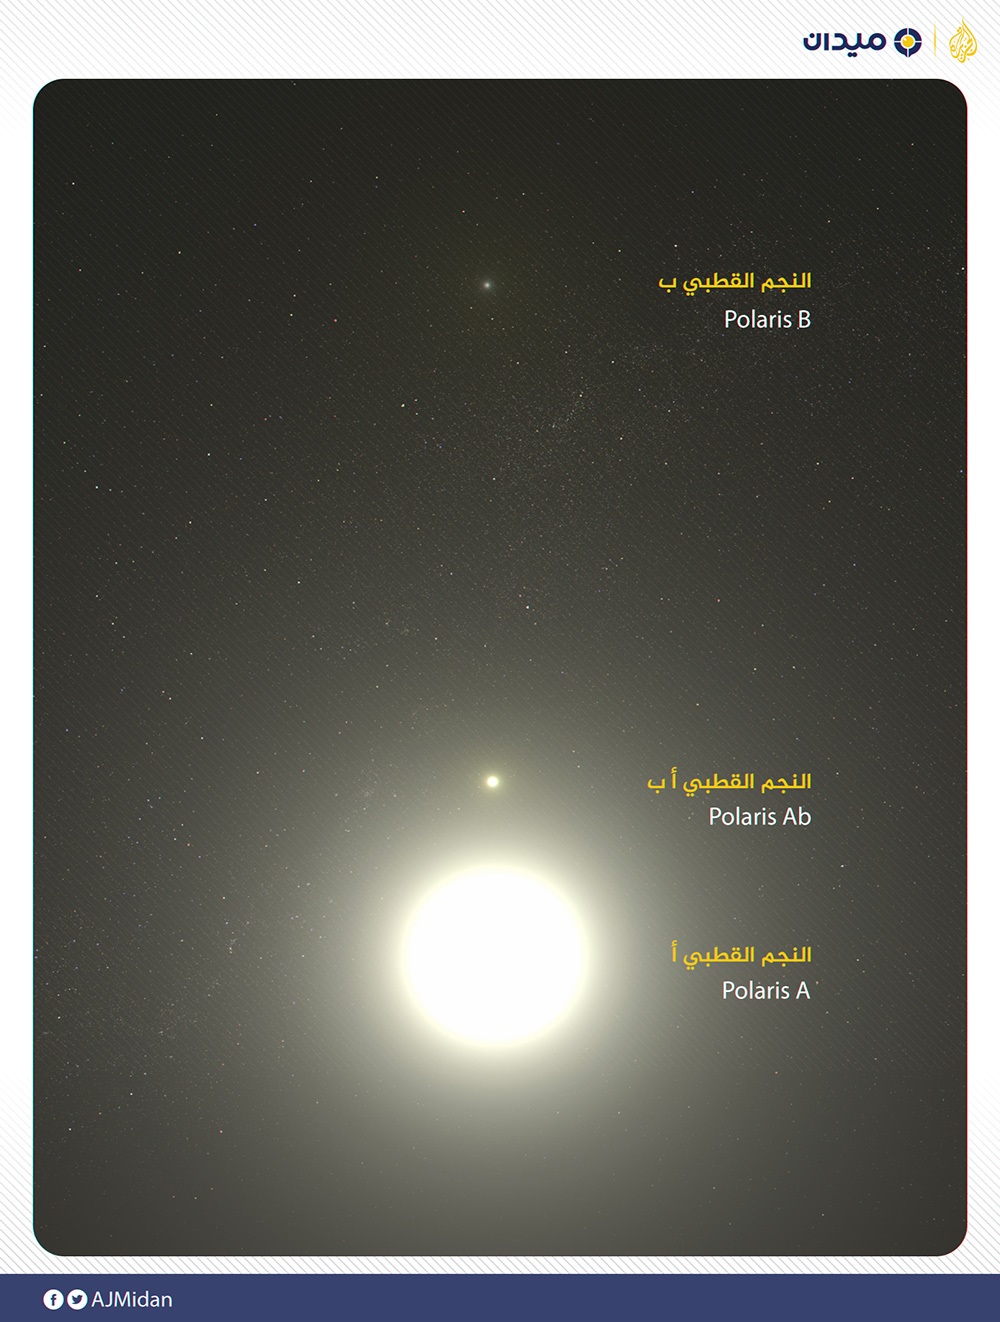 النجم القطبي هو نظام يتكون من ثلاثة نجوم تدور معا (الجزيرة)